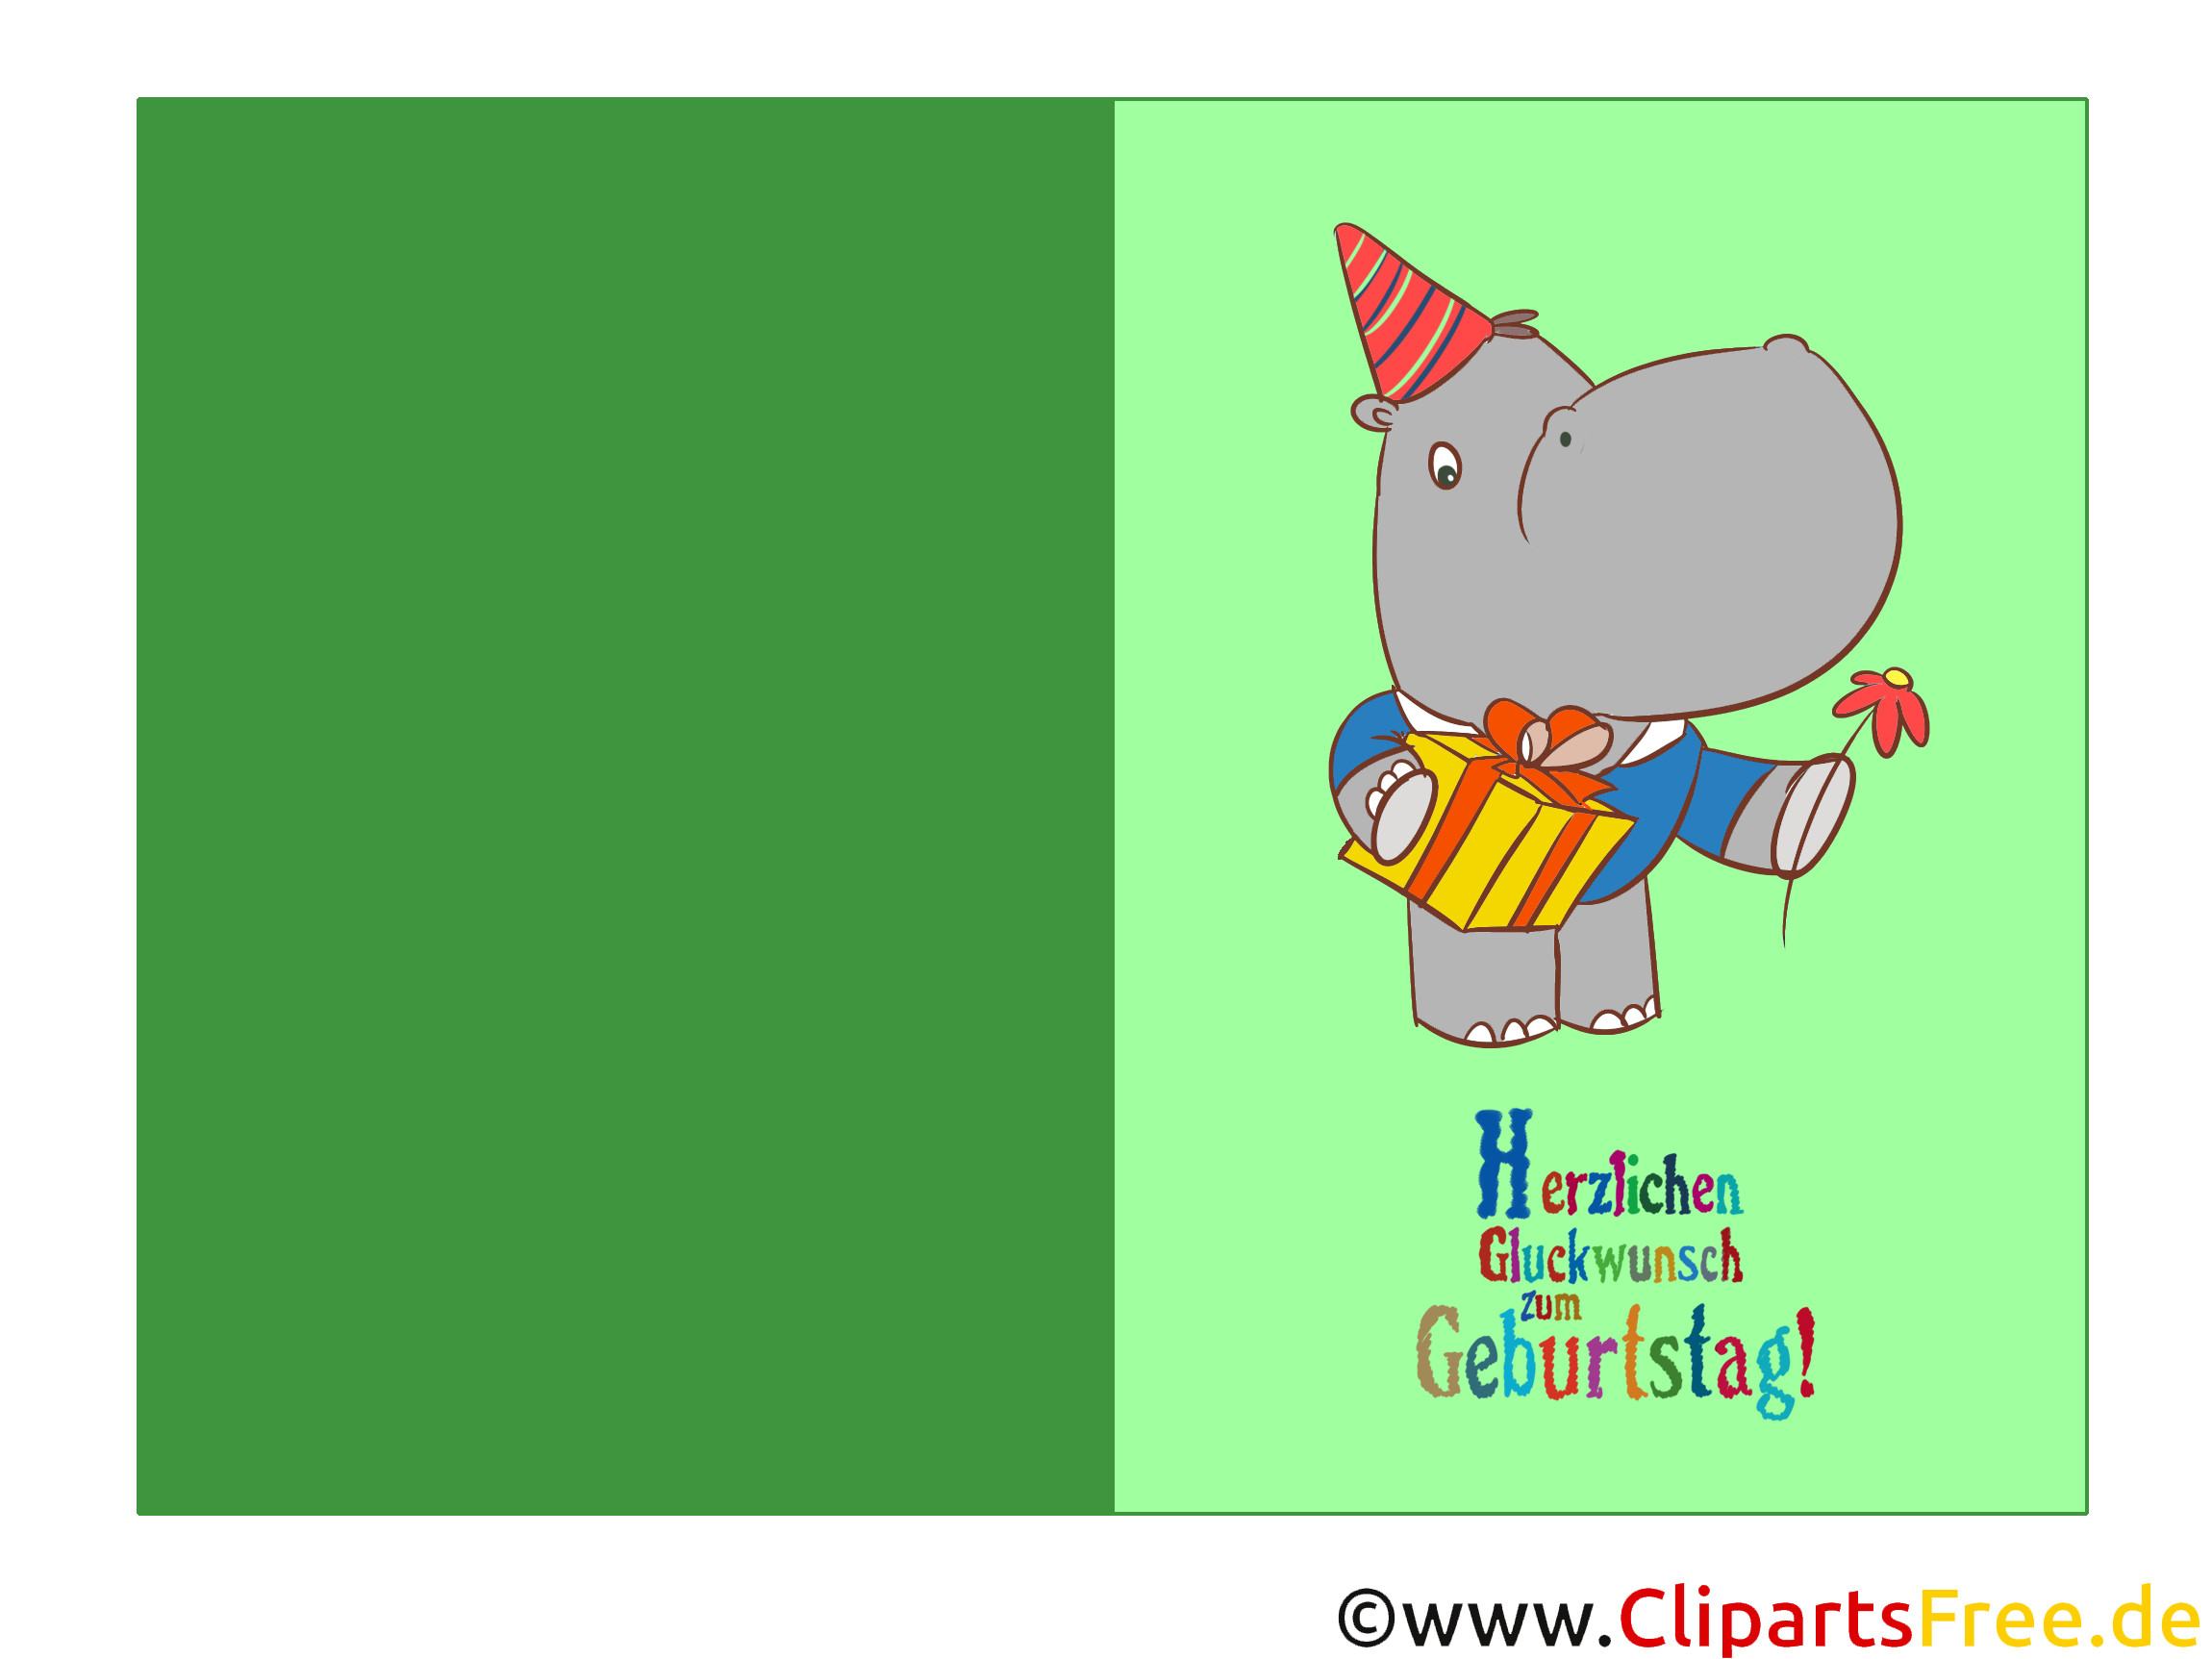 Geburtstagskarten Kostenlos
 Geburtstagskarten kostenlos in Hochauflösung ausdrucken